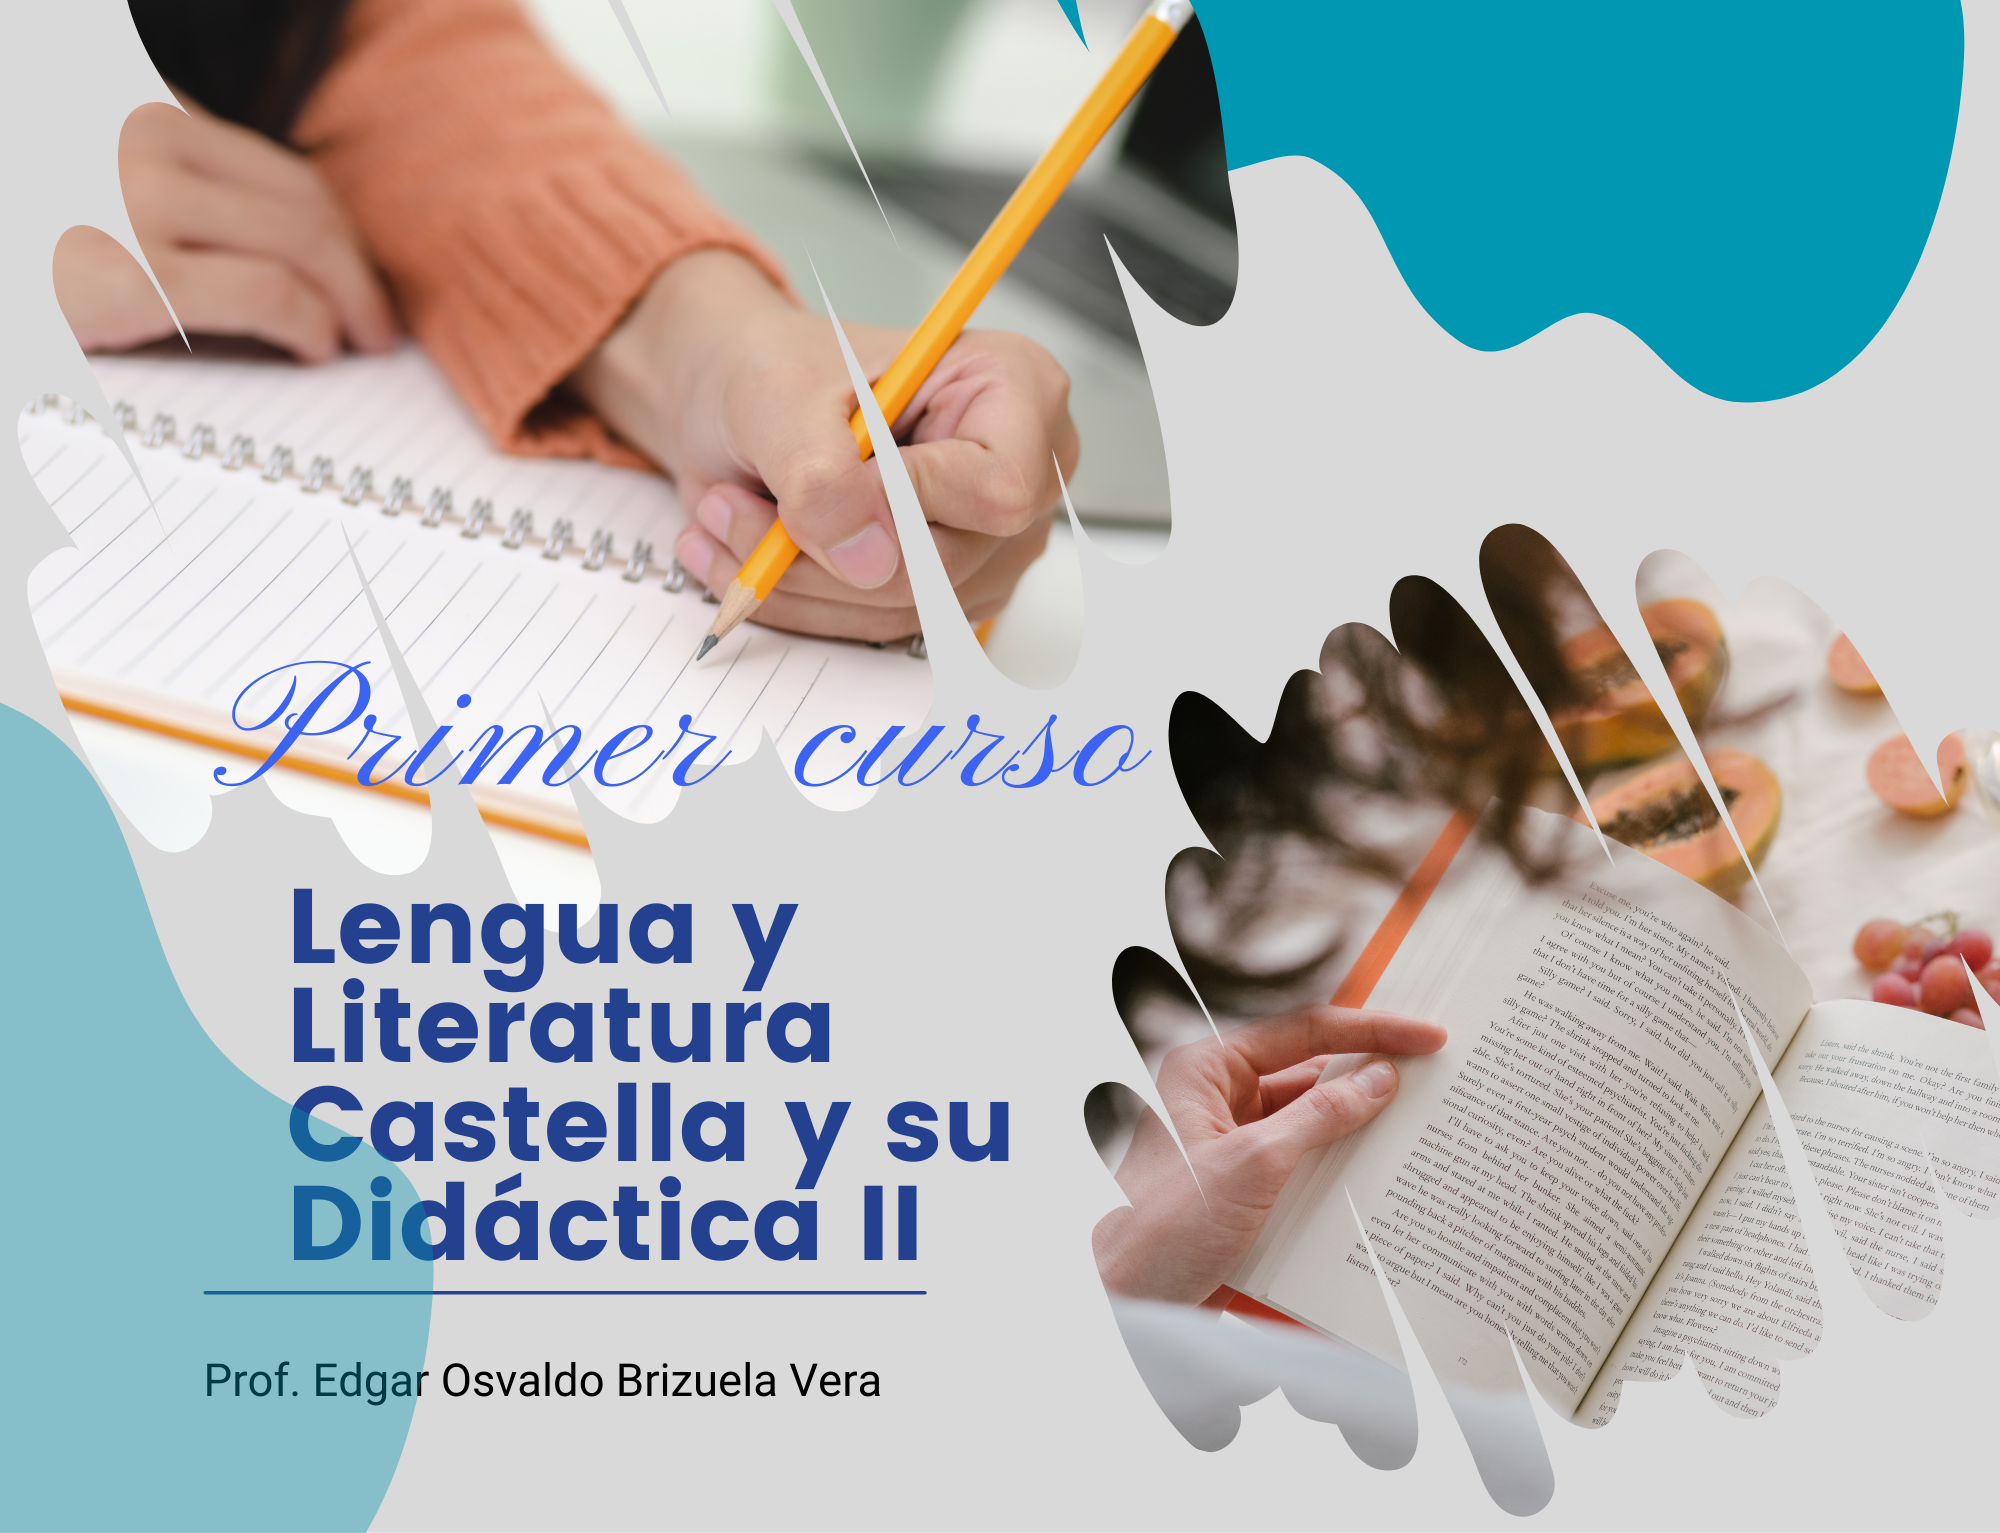 Lengua y Literatura Castellana II y su Didactica